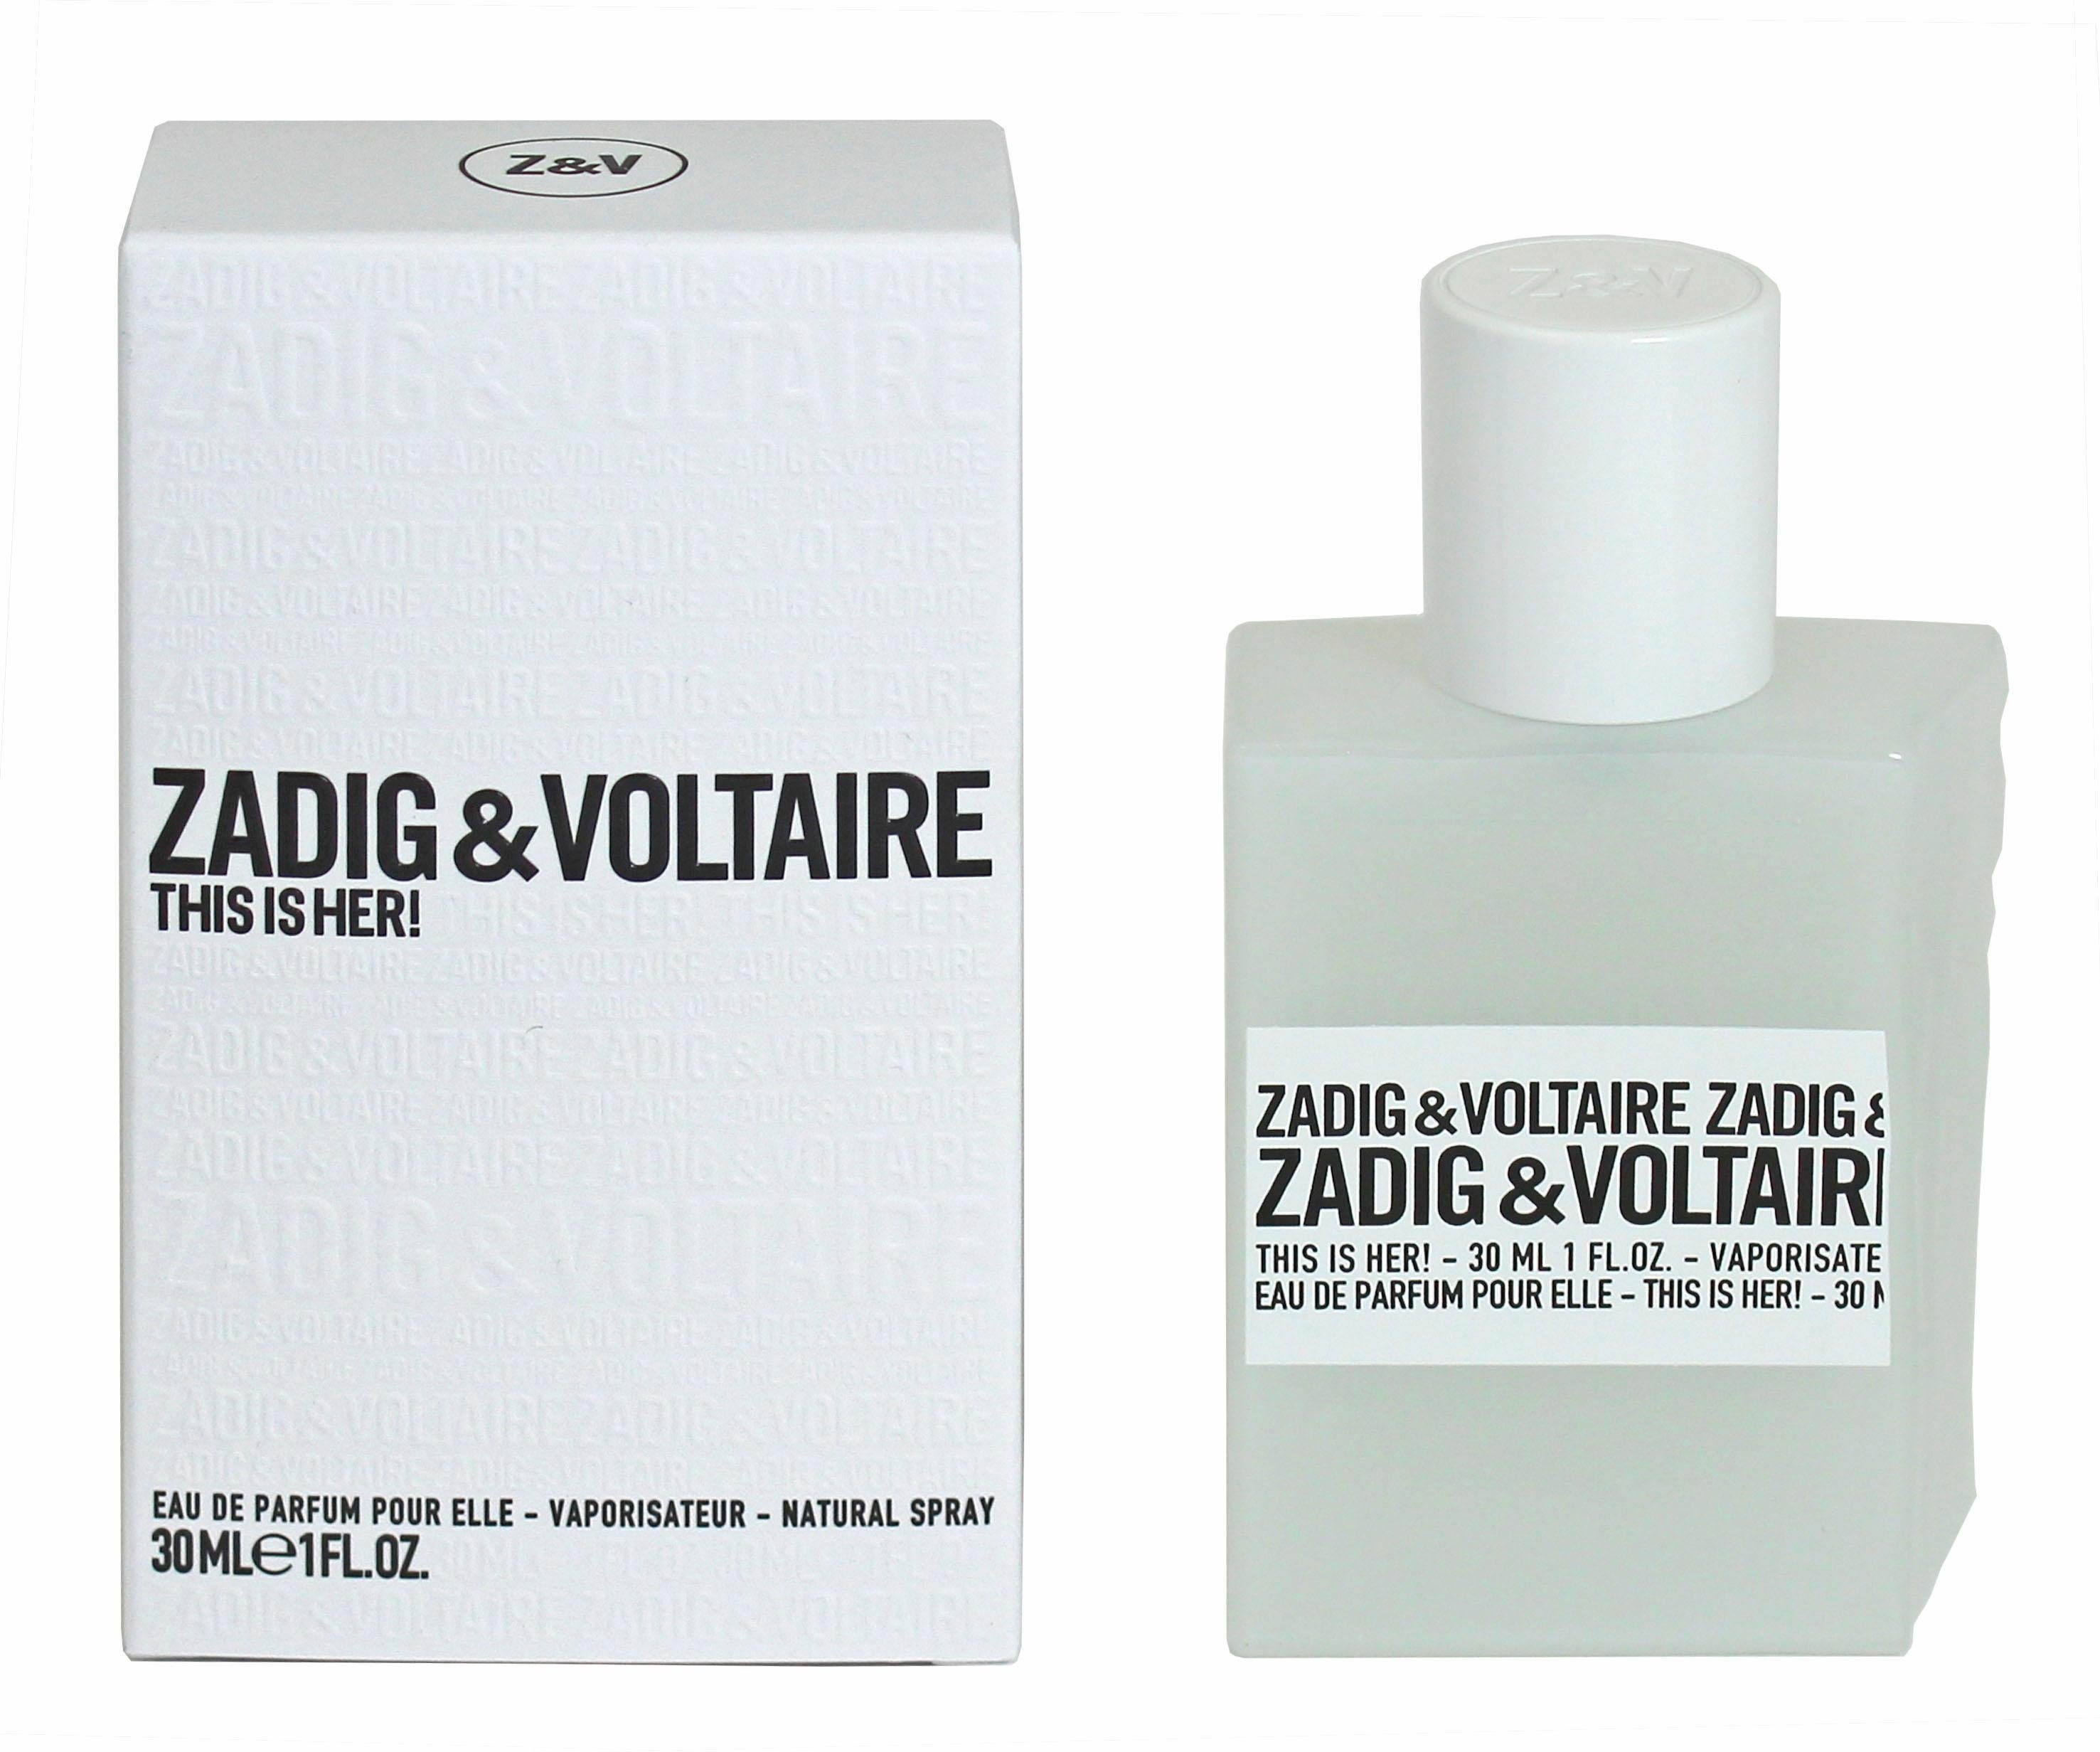 ZADIG de Her! This Eau VOLTAIRE & Parfum is